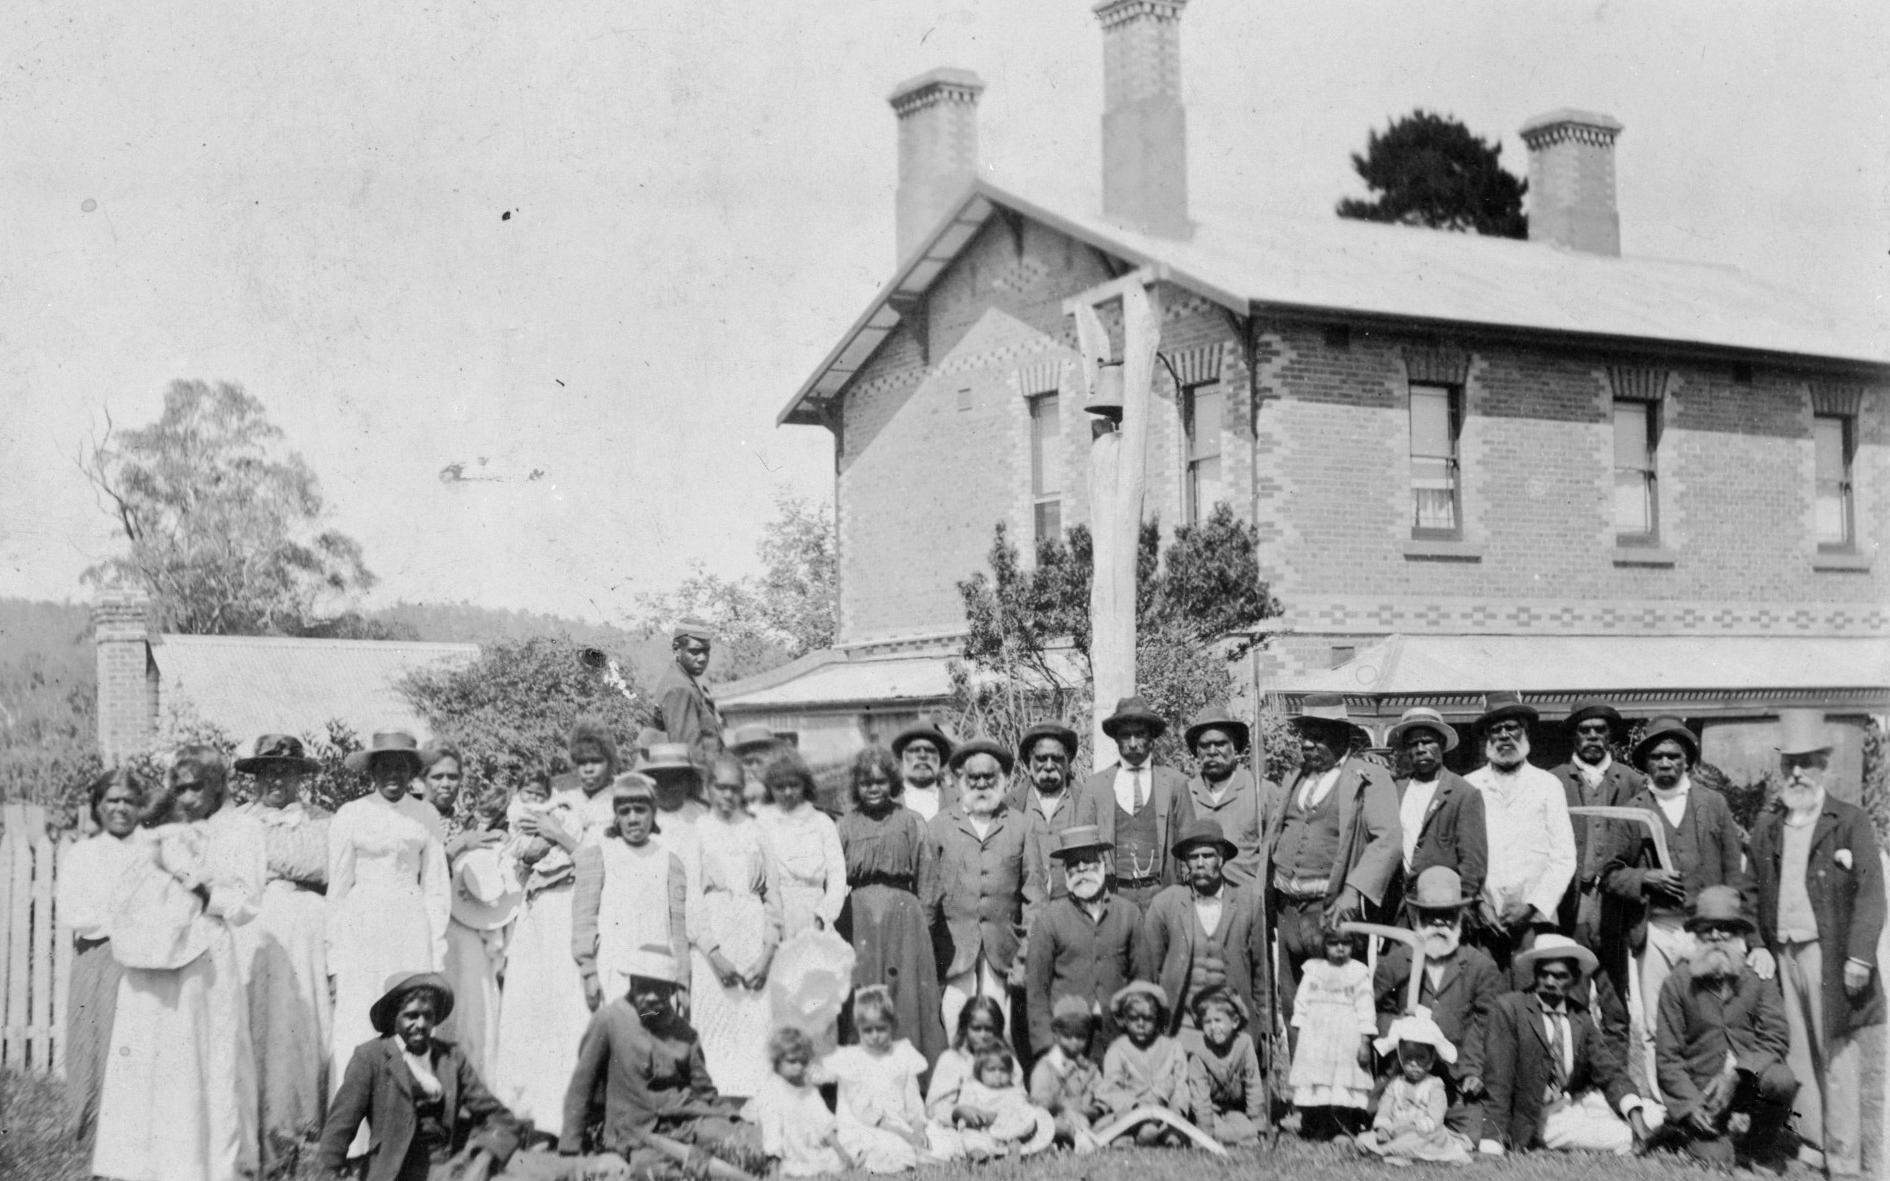 William Barak and the Aboriginal community of Coranderrk.